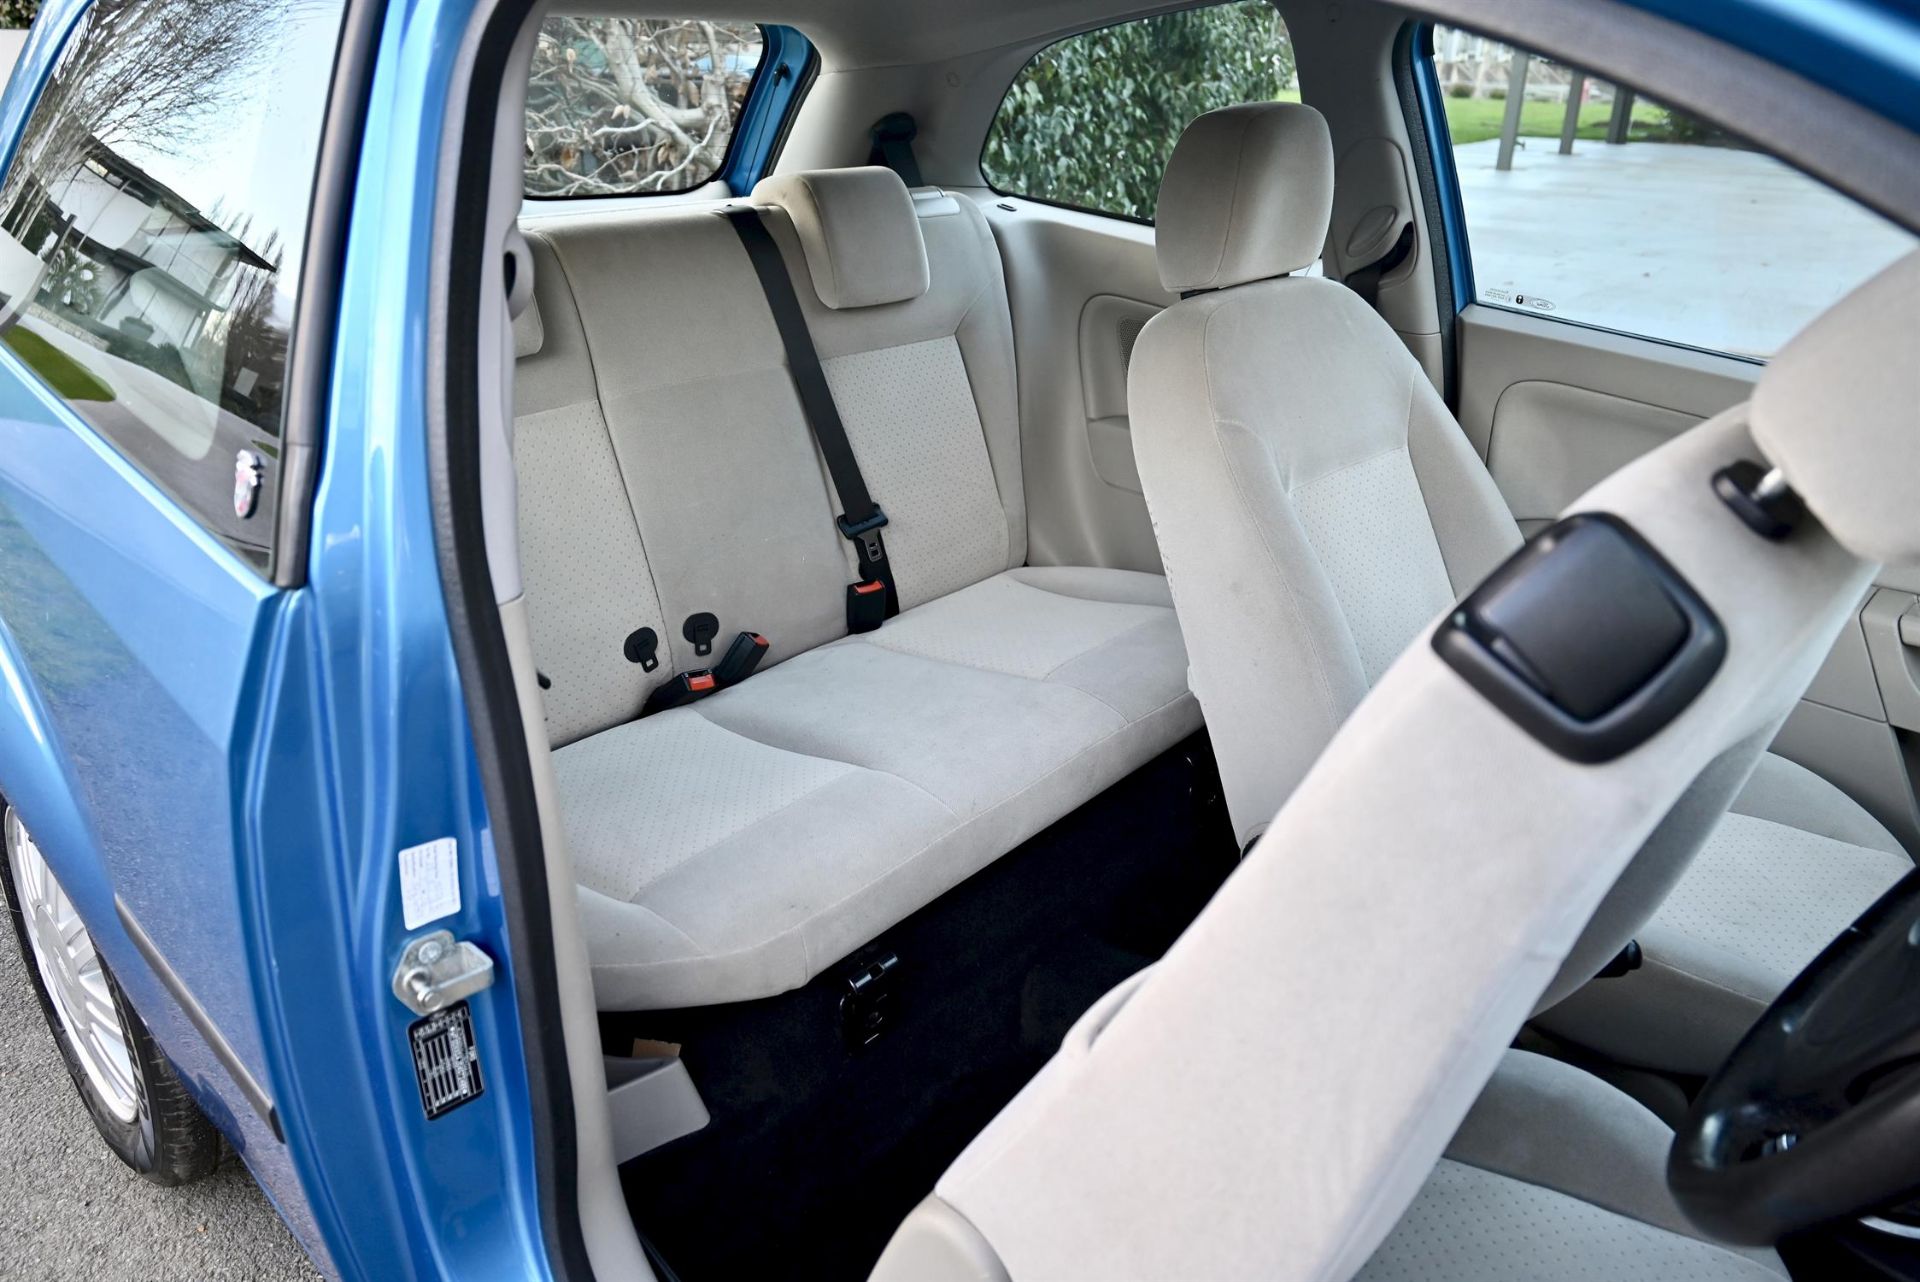 2004 Ford Fiesta 1.4 Ghia 3-door hatchback. Registration number: EO54 JNK. Metallic Aquarius Blue, - Image 11 of 16